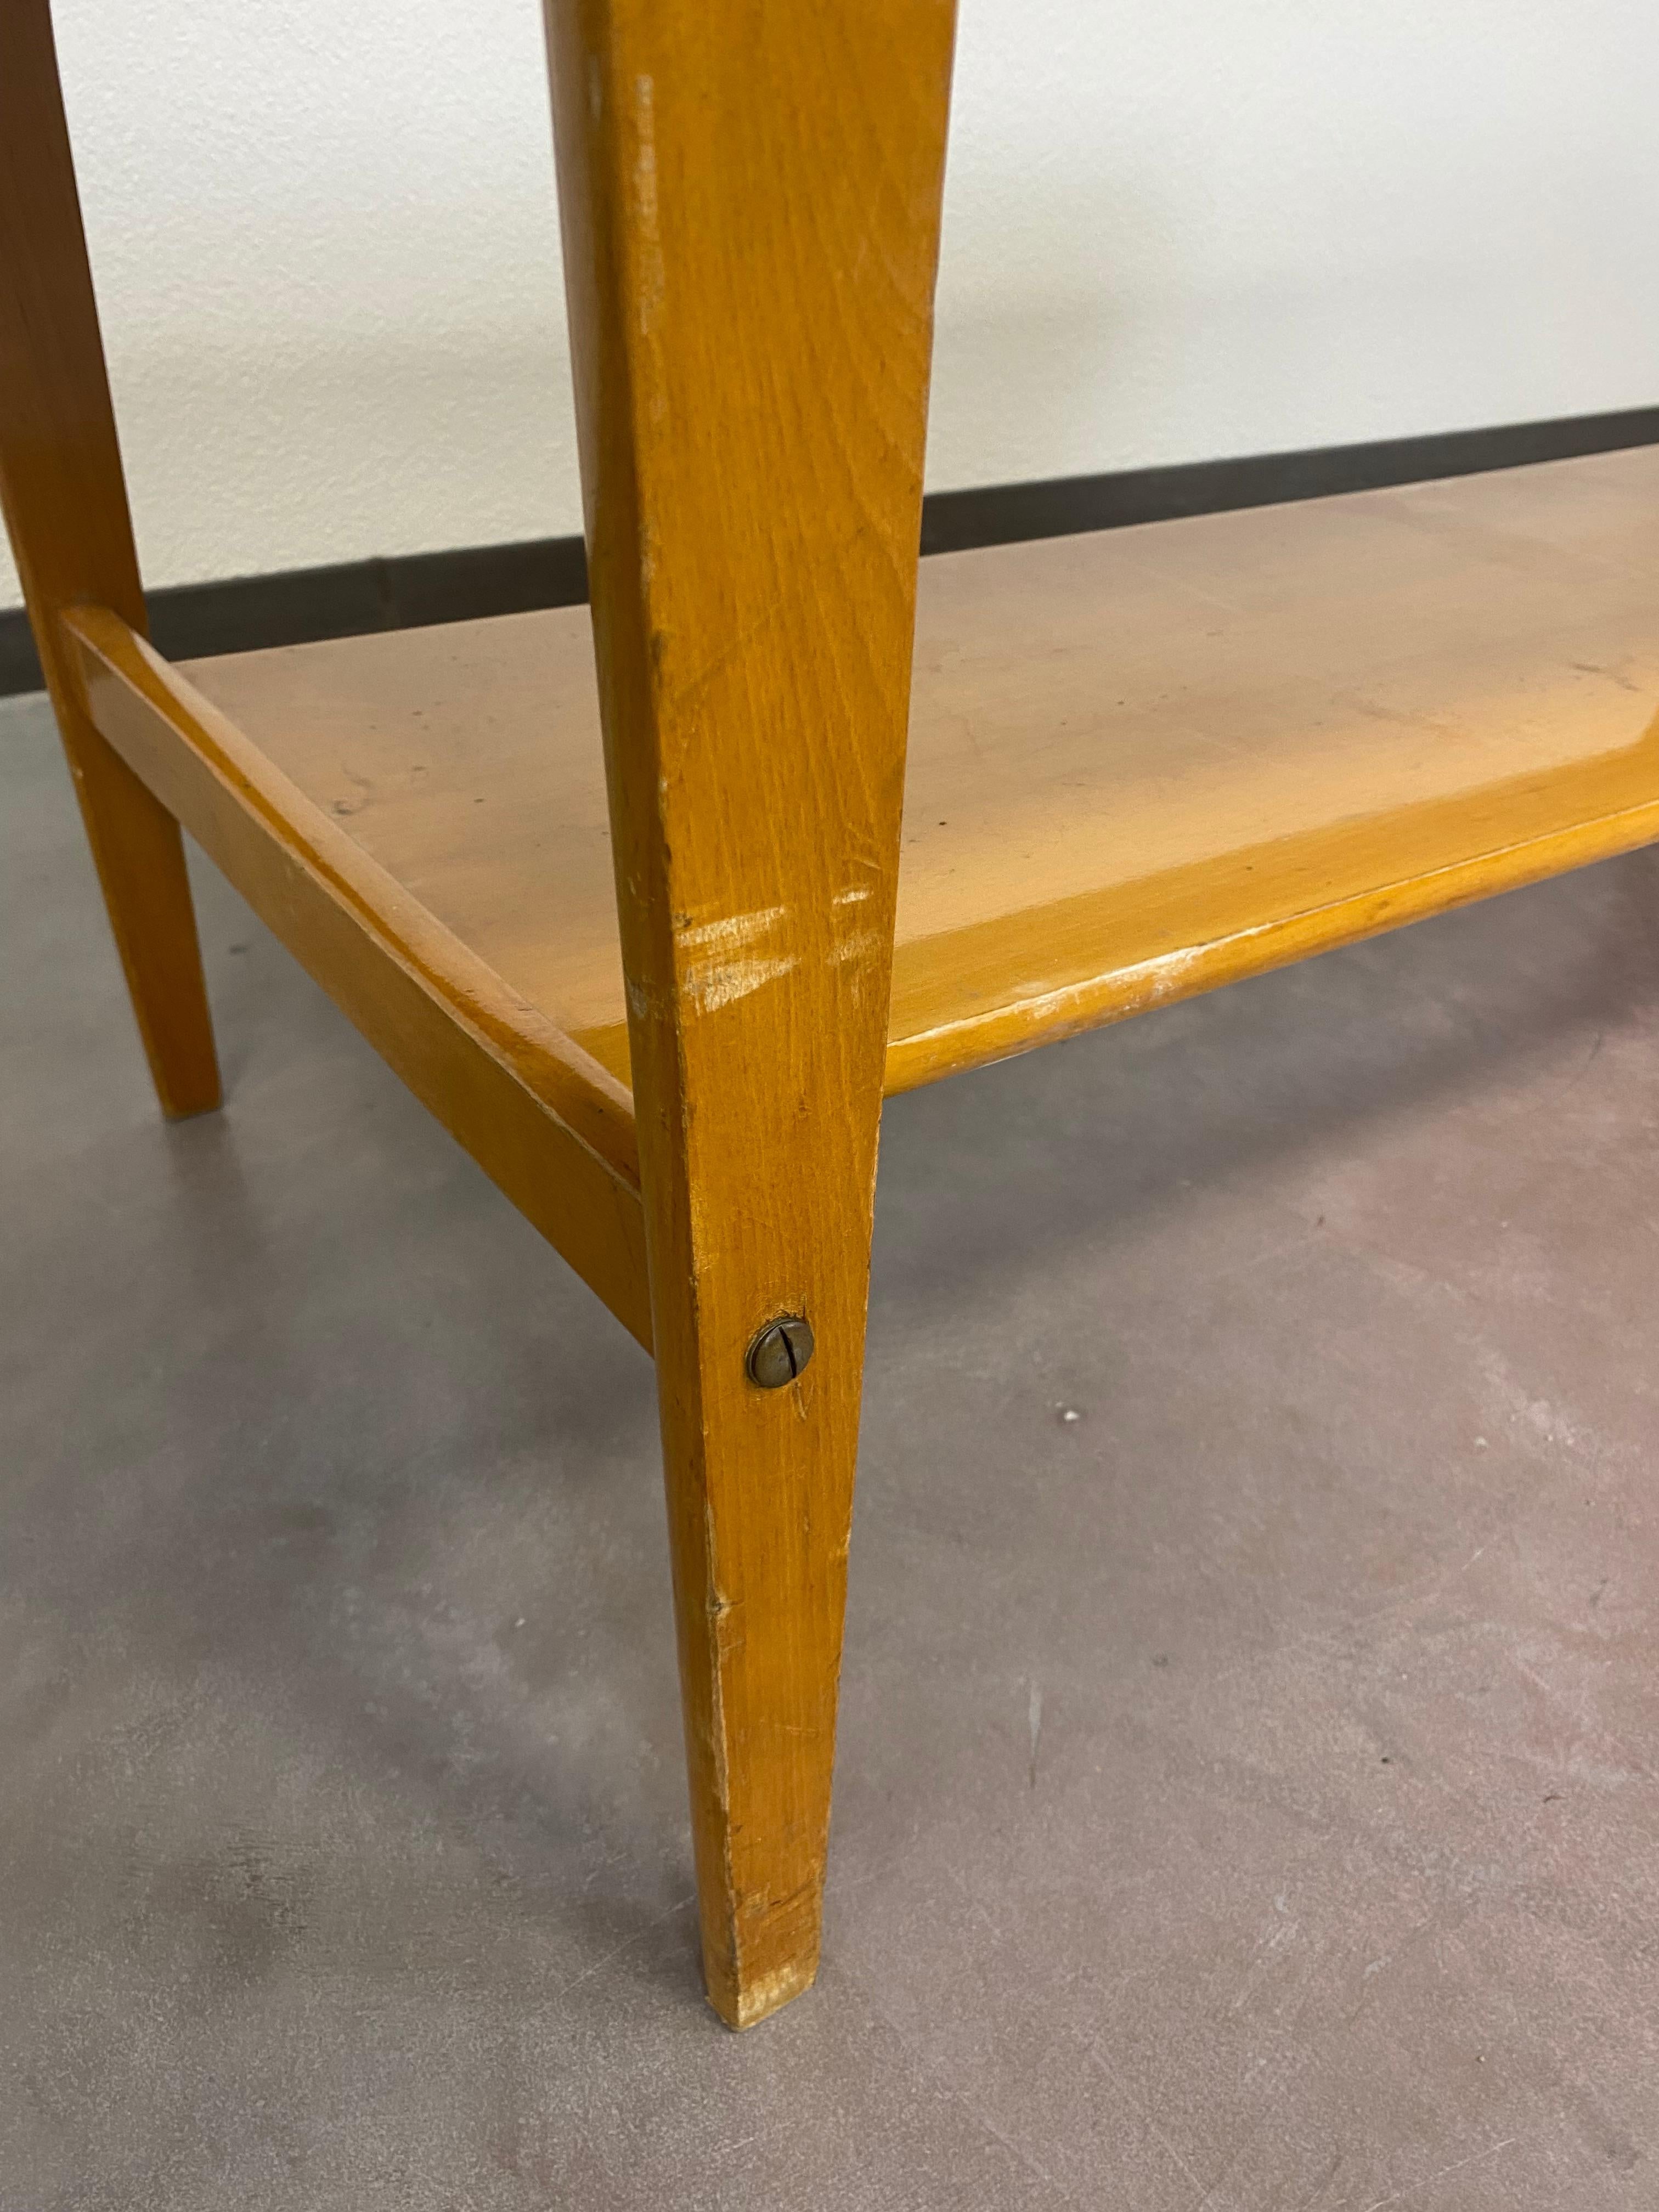 Wood Vintage Adjustable Conference Table For Sale